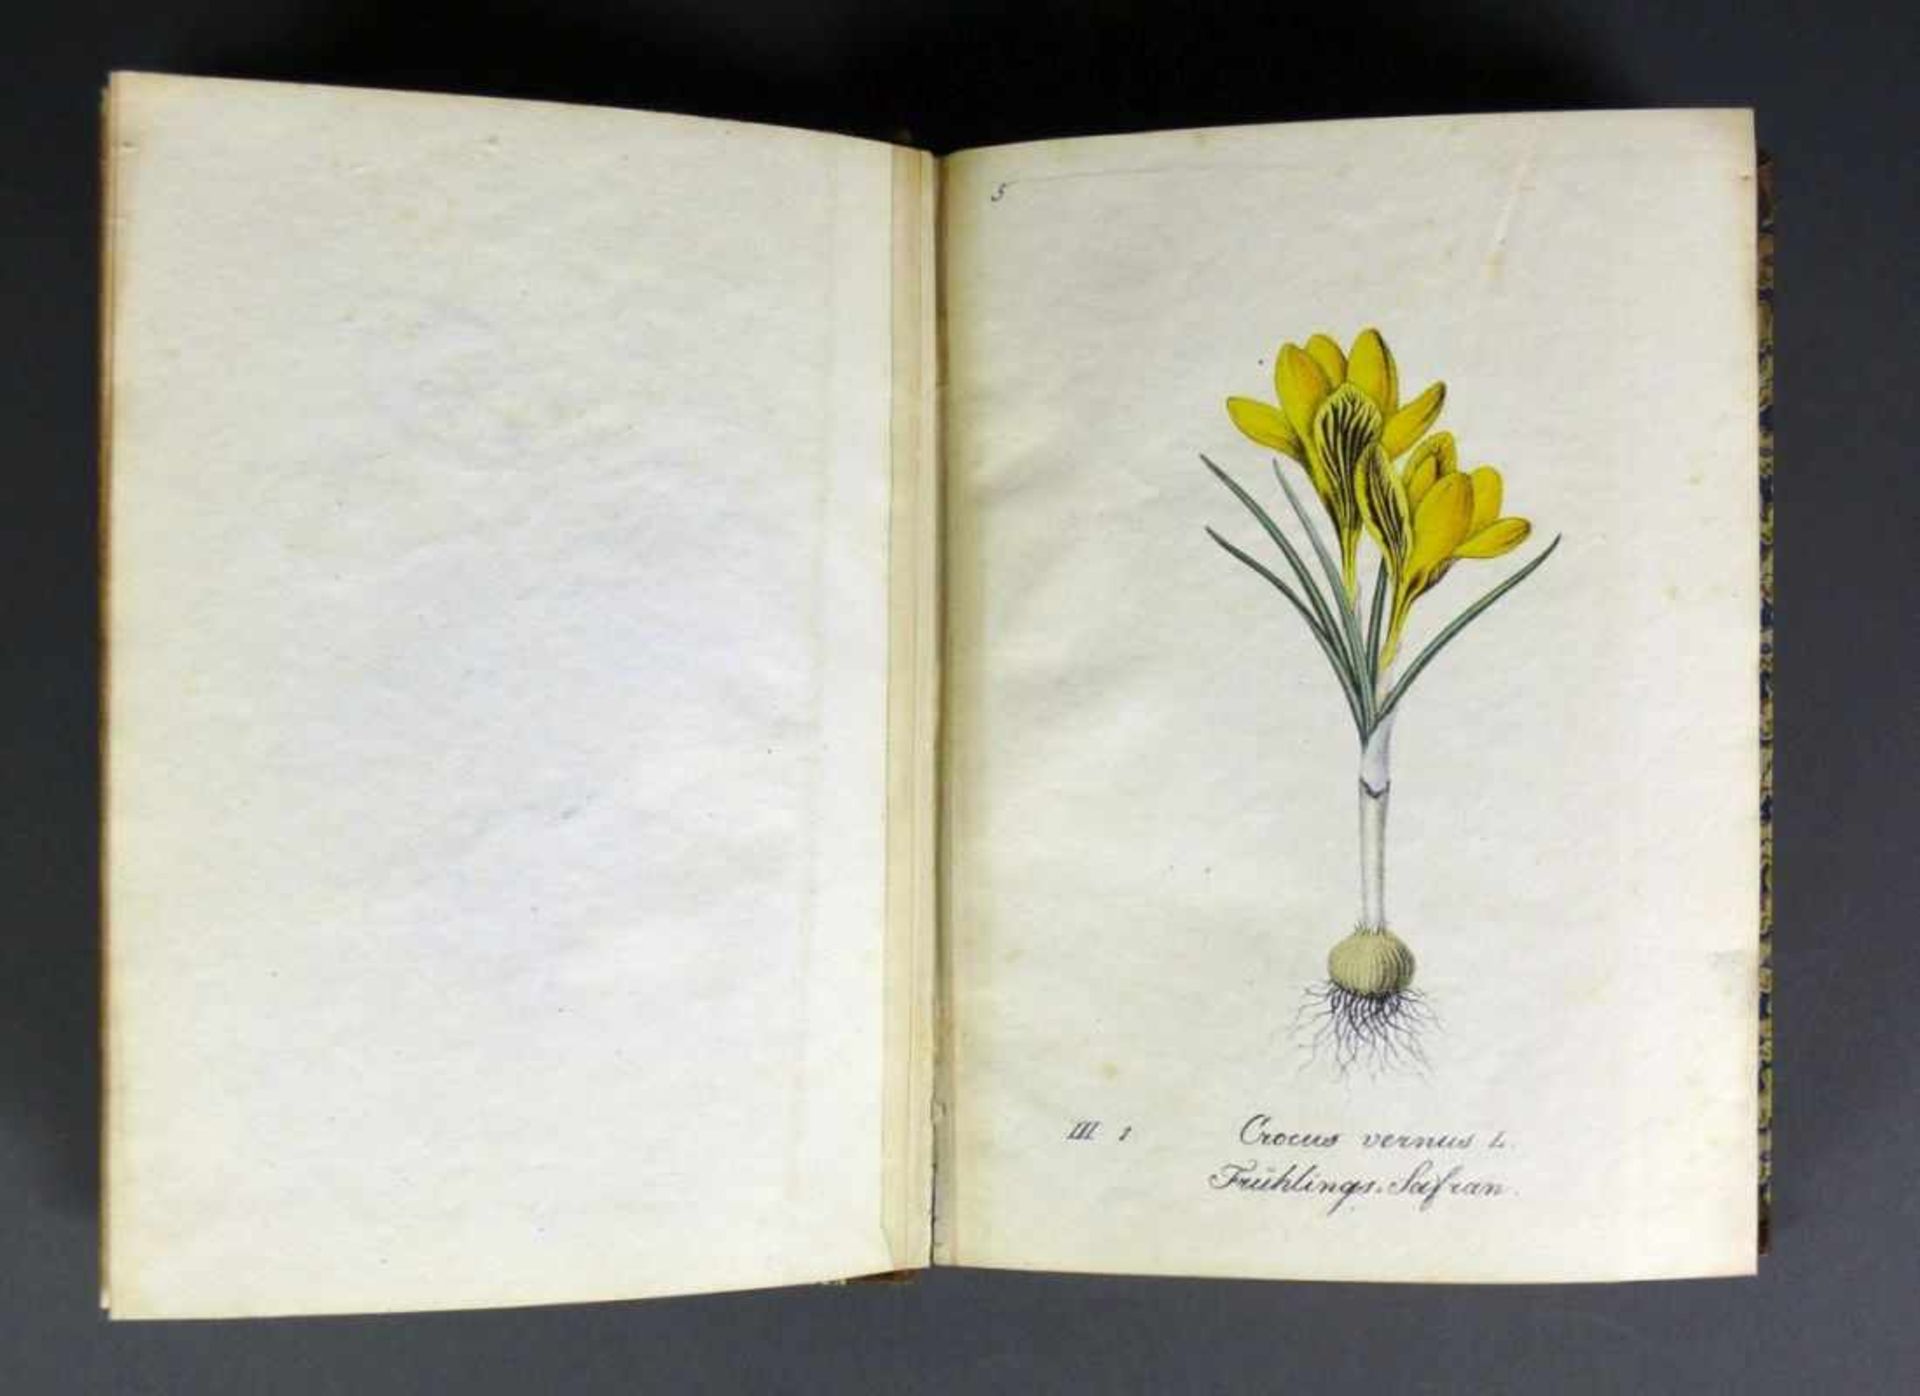 Labram-Zierpflanzen Sammlung von Zierpflanzen nach der Natur gezeichnet und colorirt von J.D. - Image 4 of 7